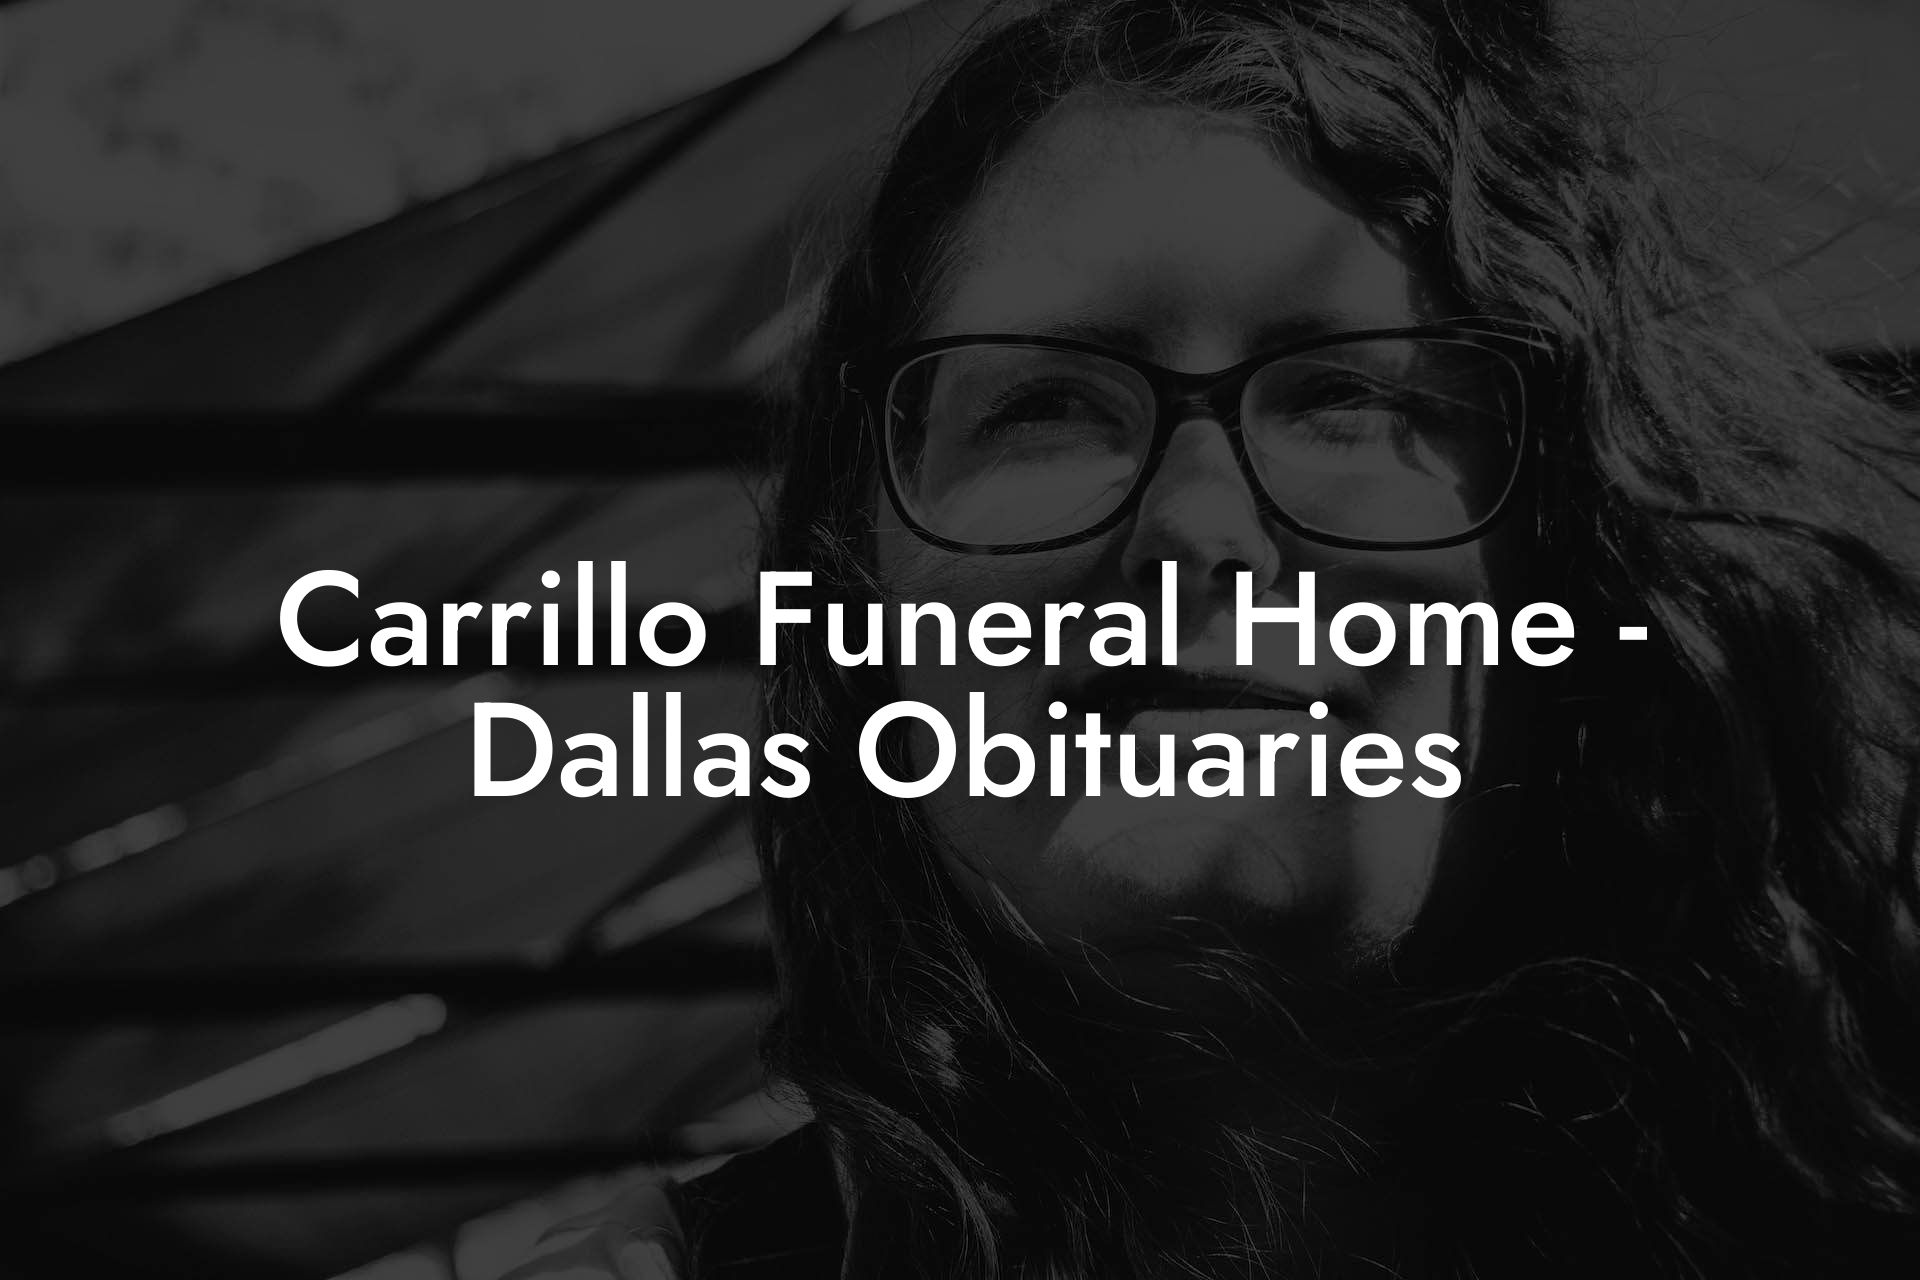 Carrillo Funeral Home - Dallas Obituaries